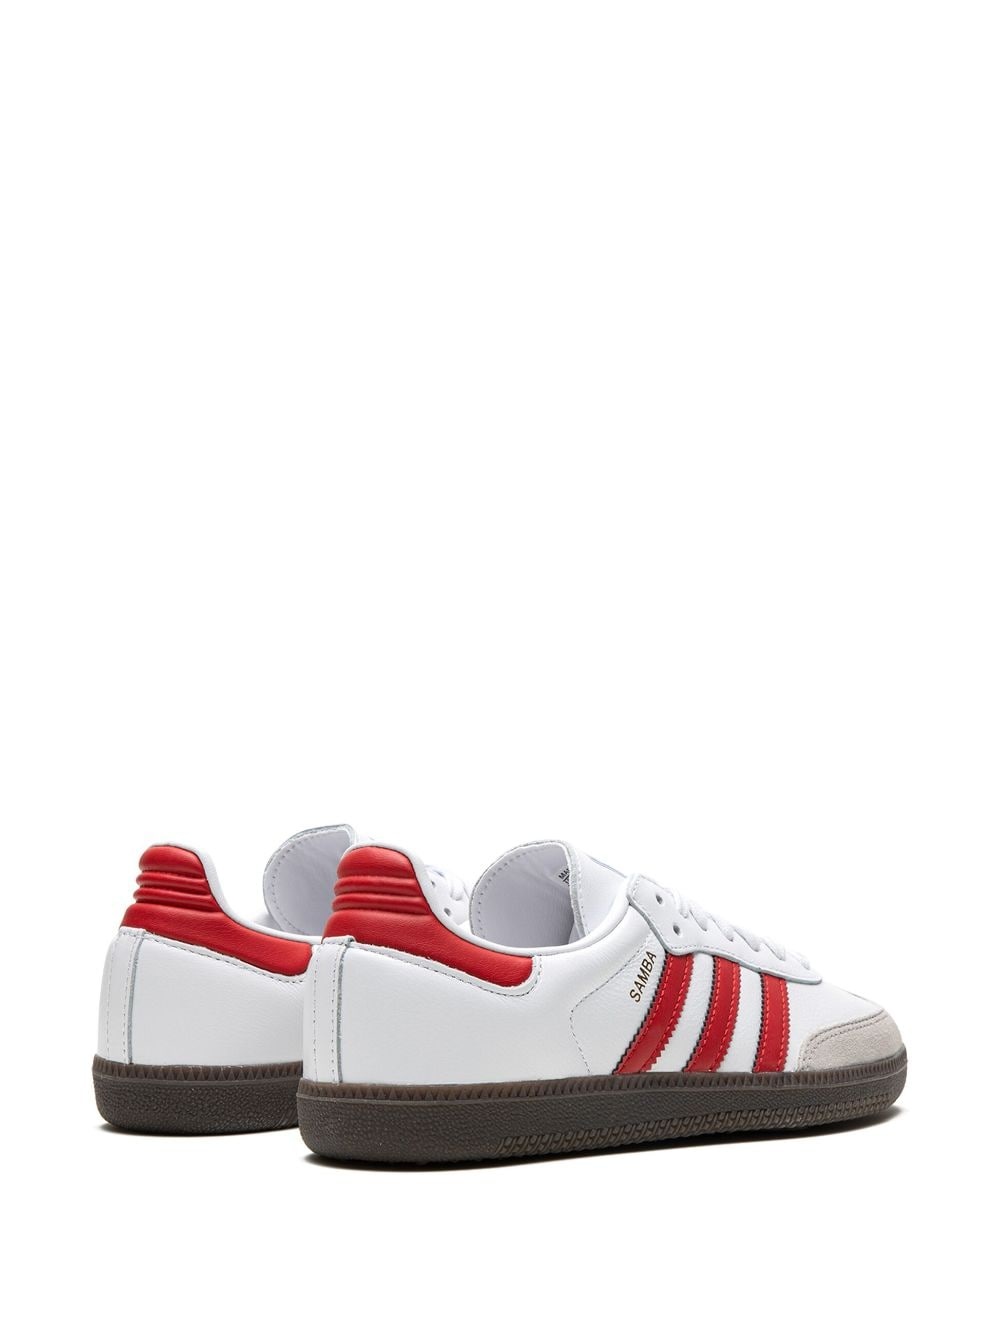 Samba OG "White/Red" sneakers - 3